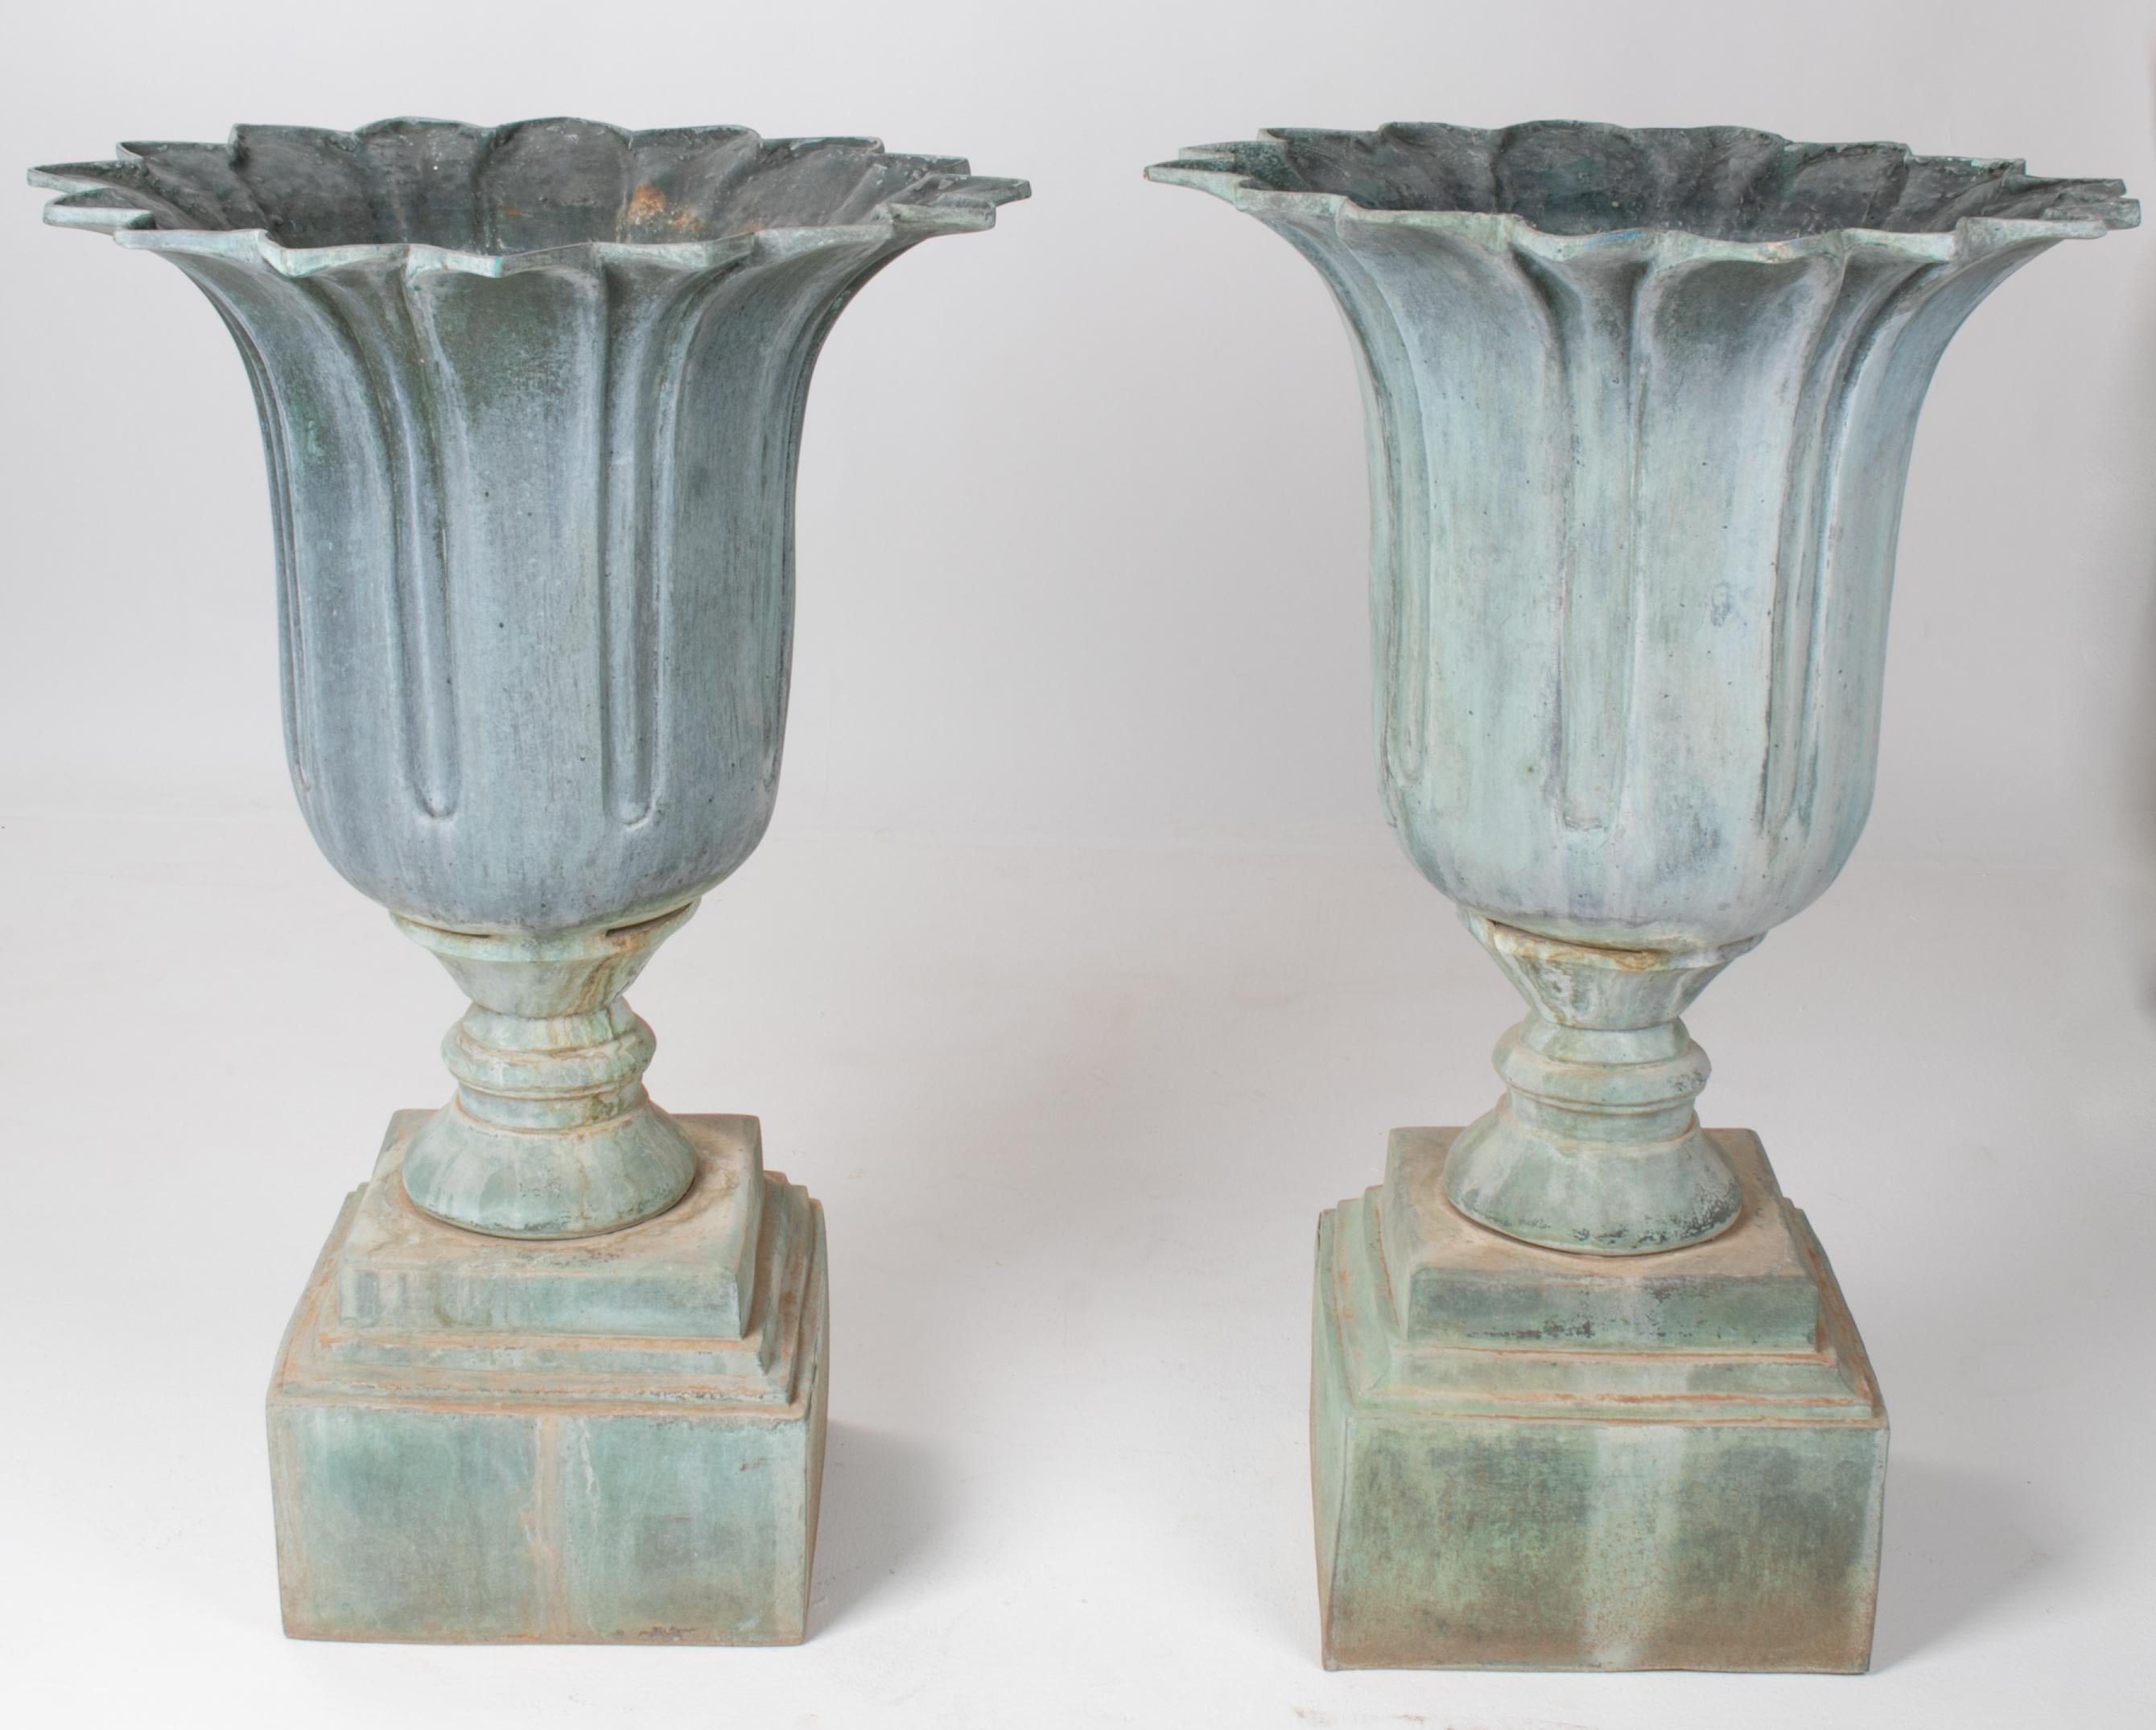 1990s pair of classical bronze garden urns.